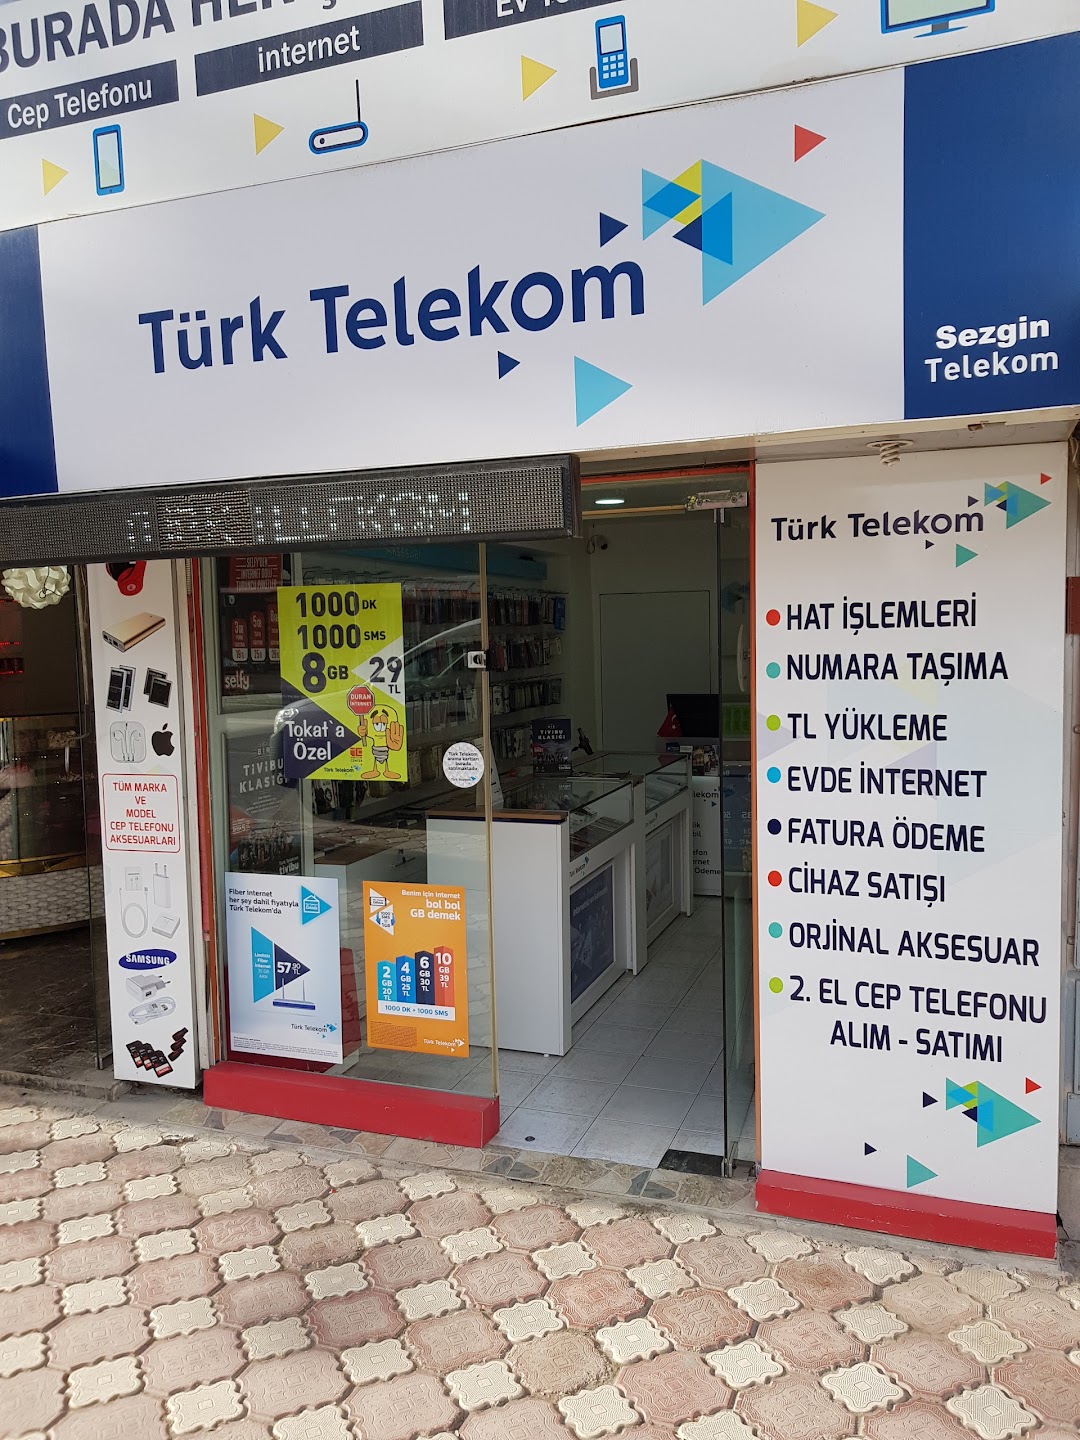 Sezgin letiim-Trk Telekom Bavuru Noktas